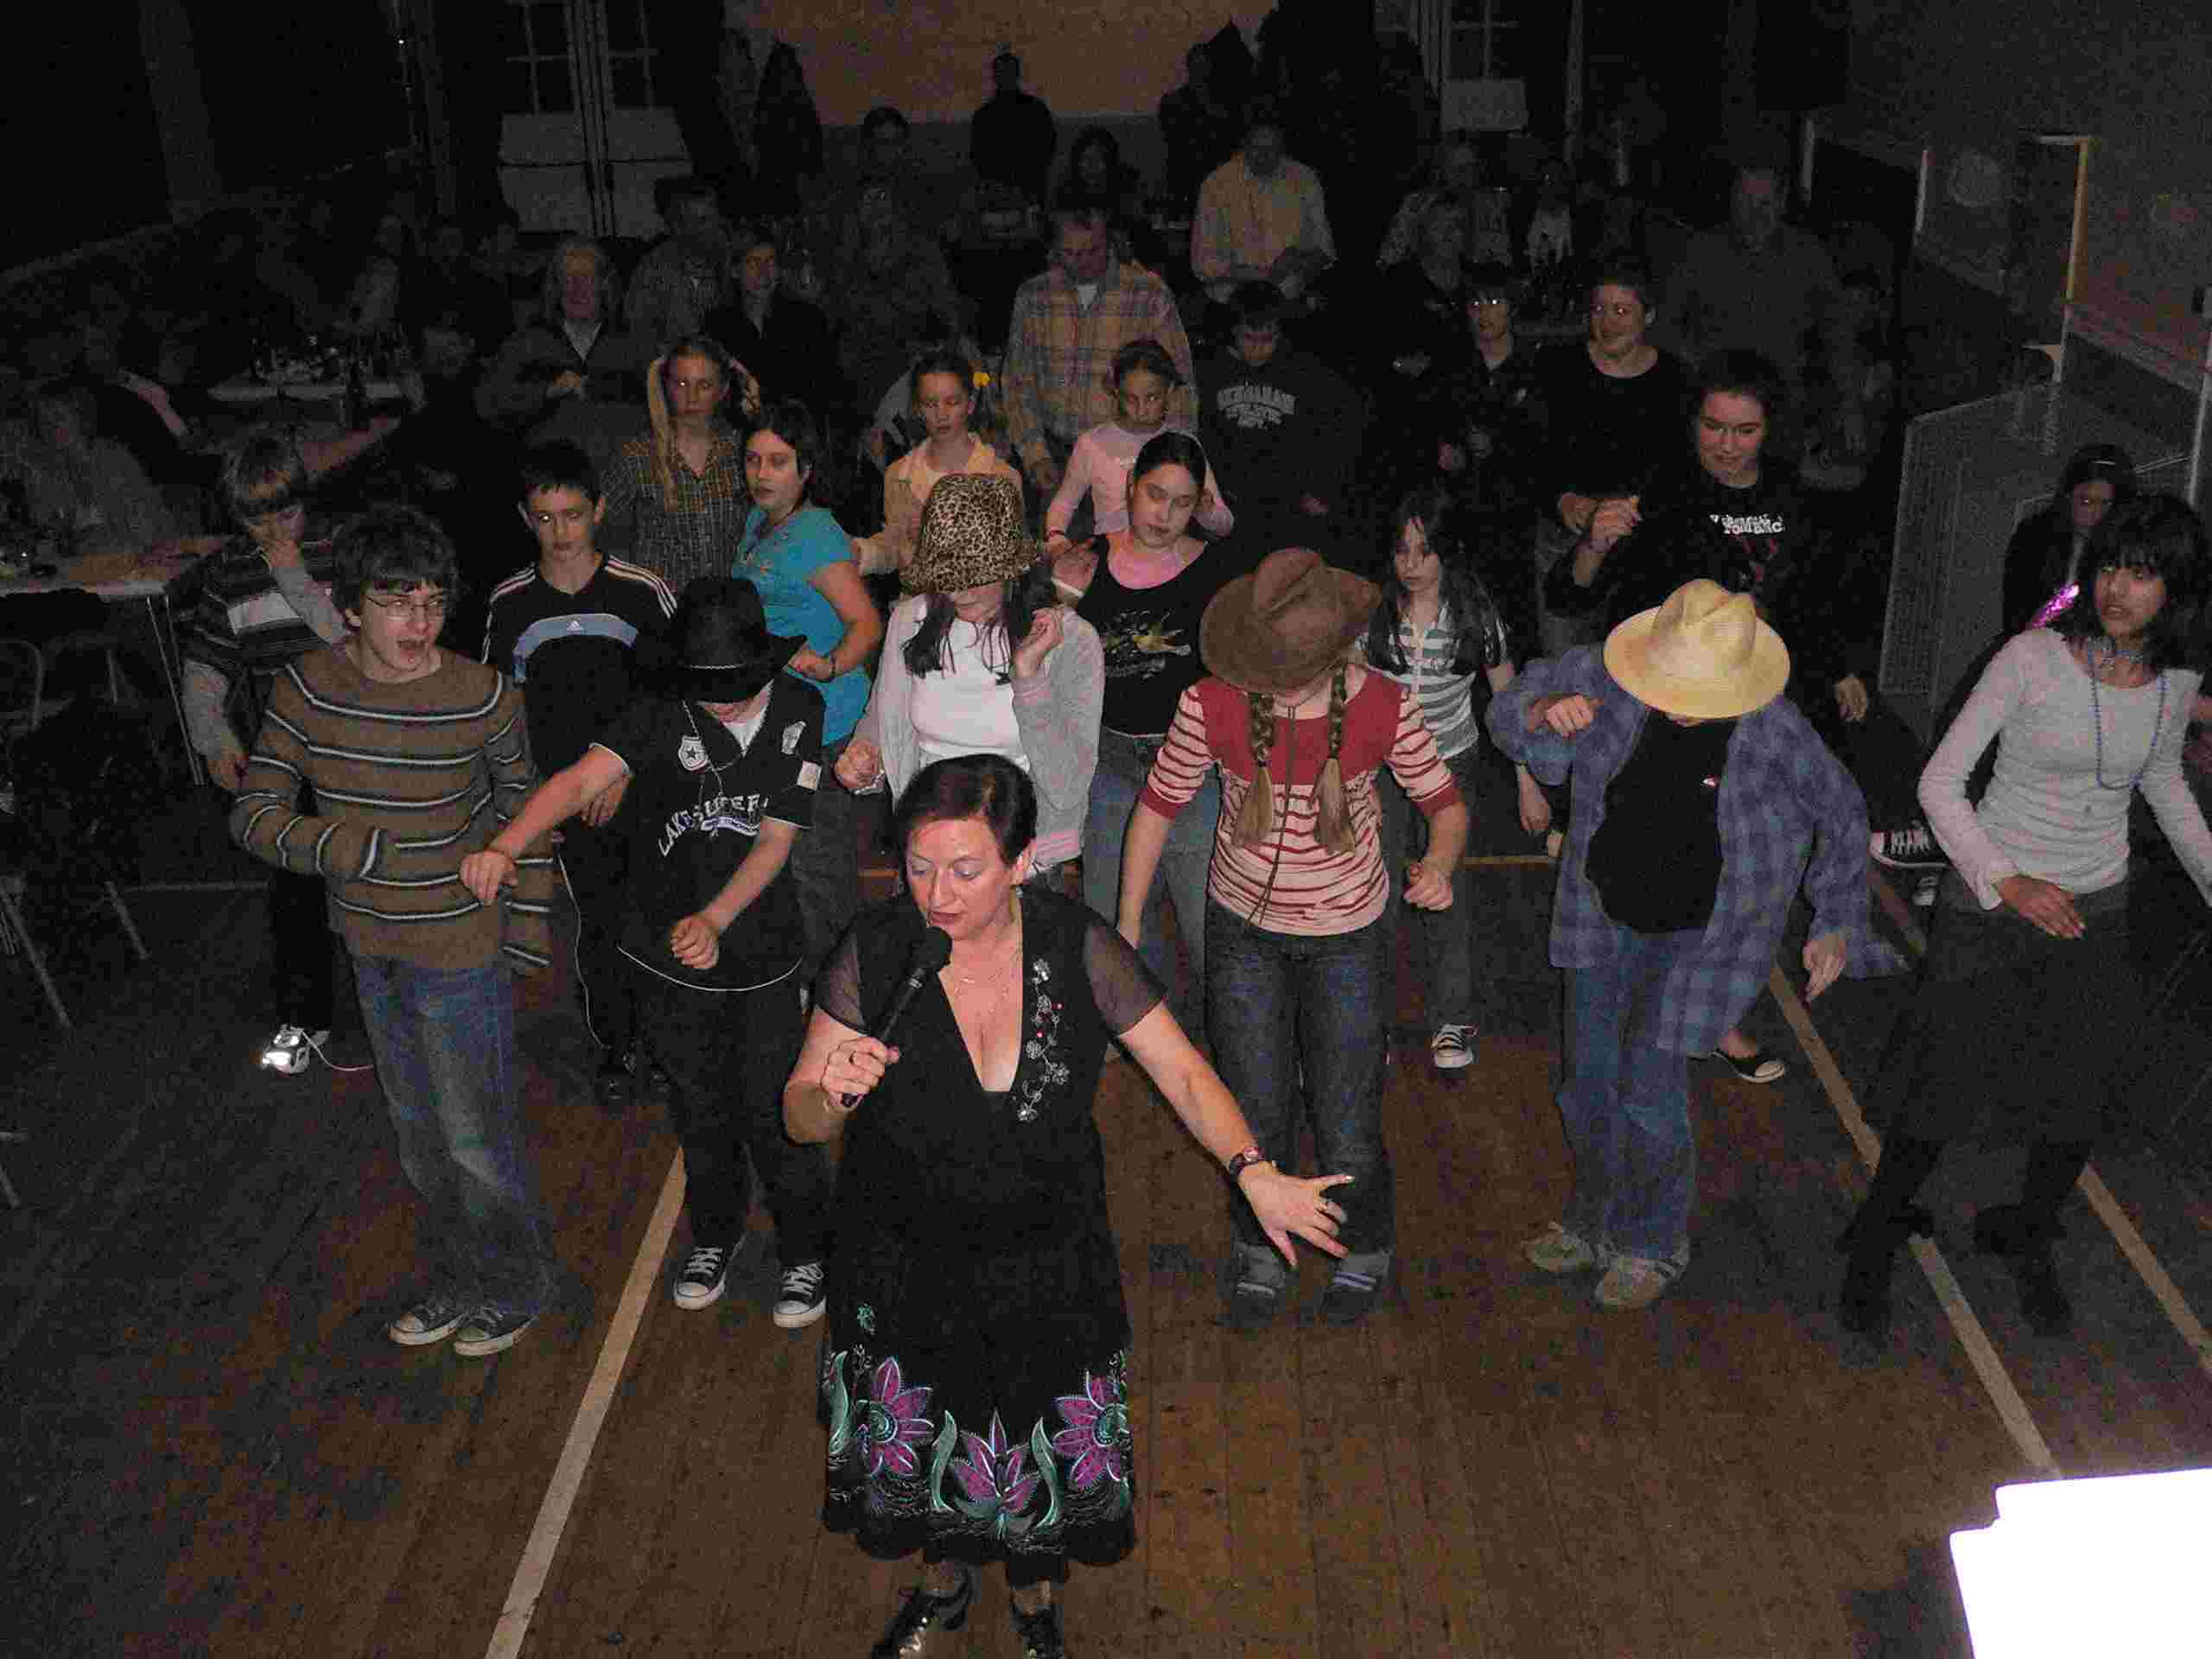 Barn dance photo